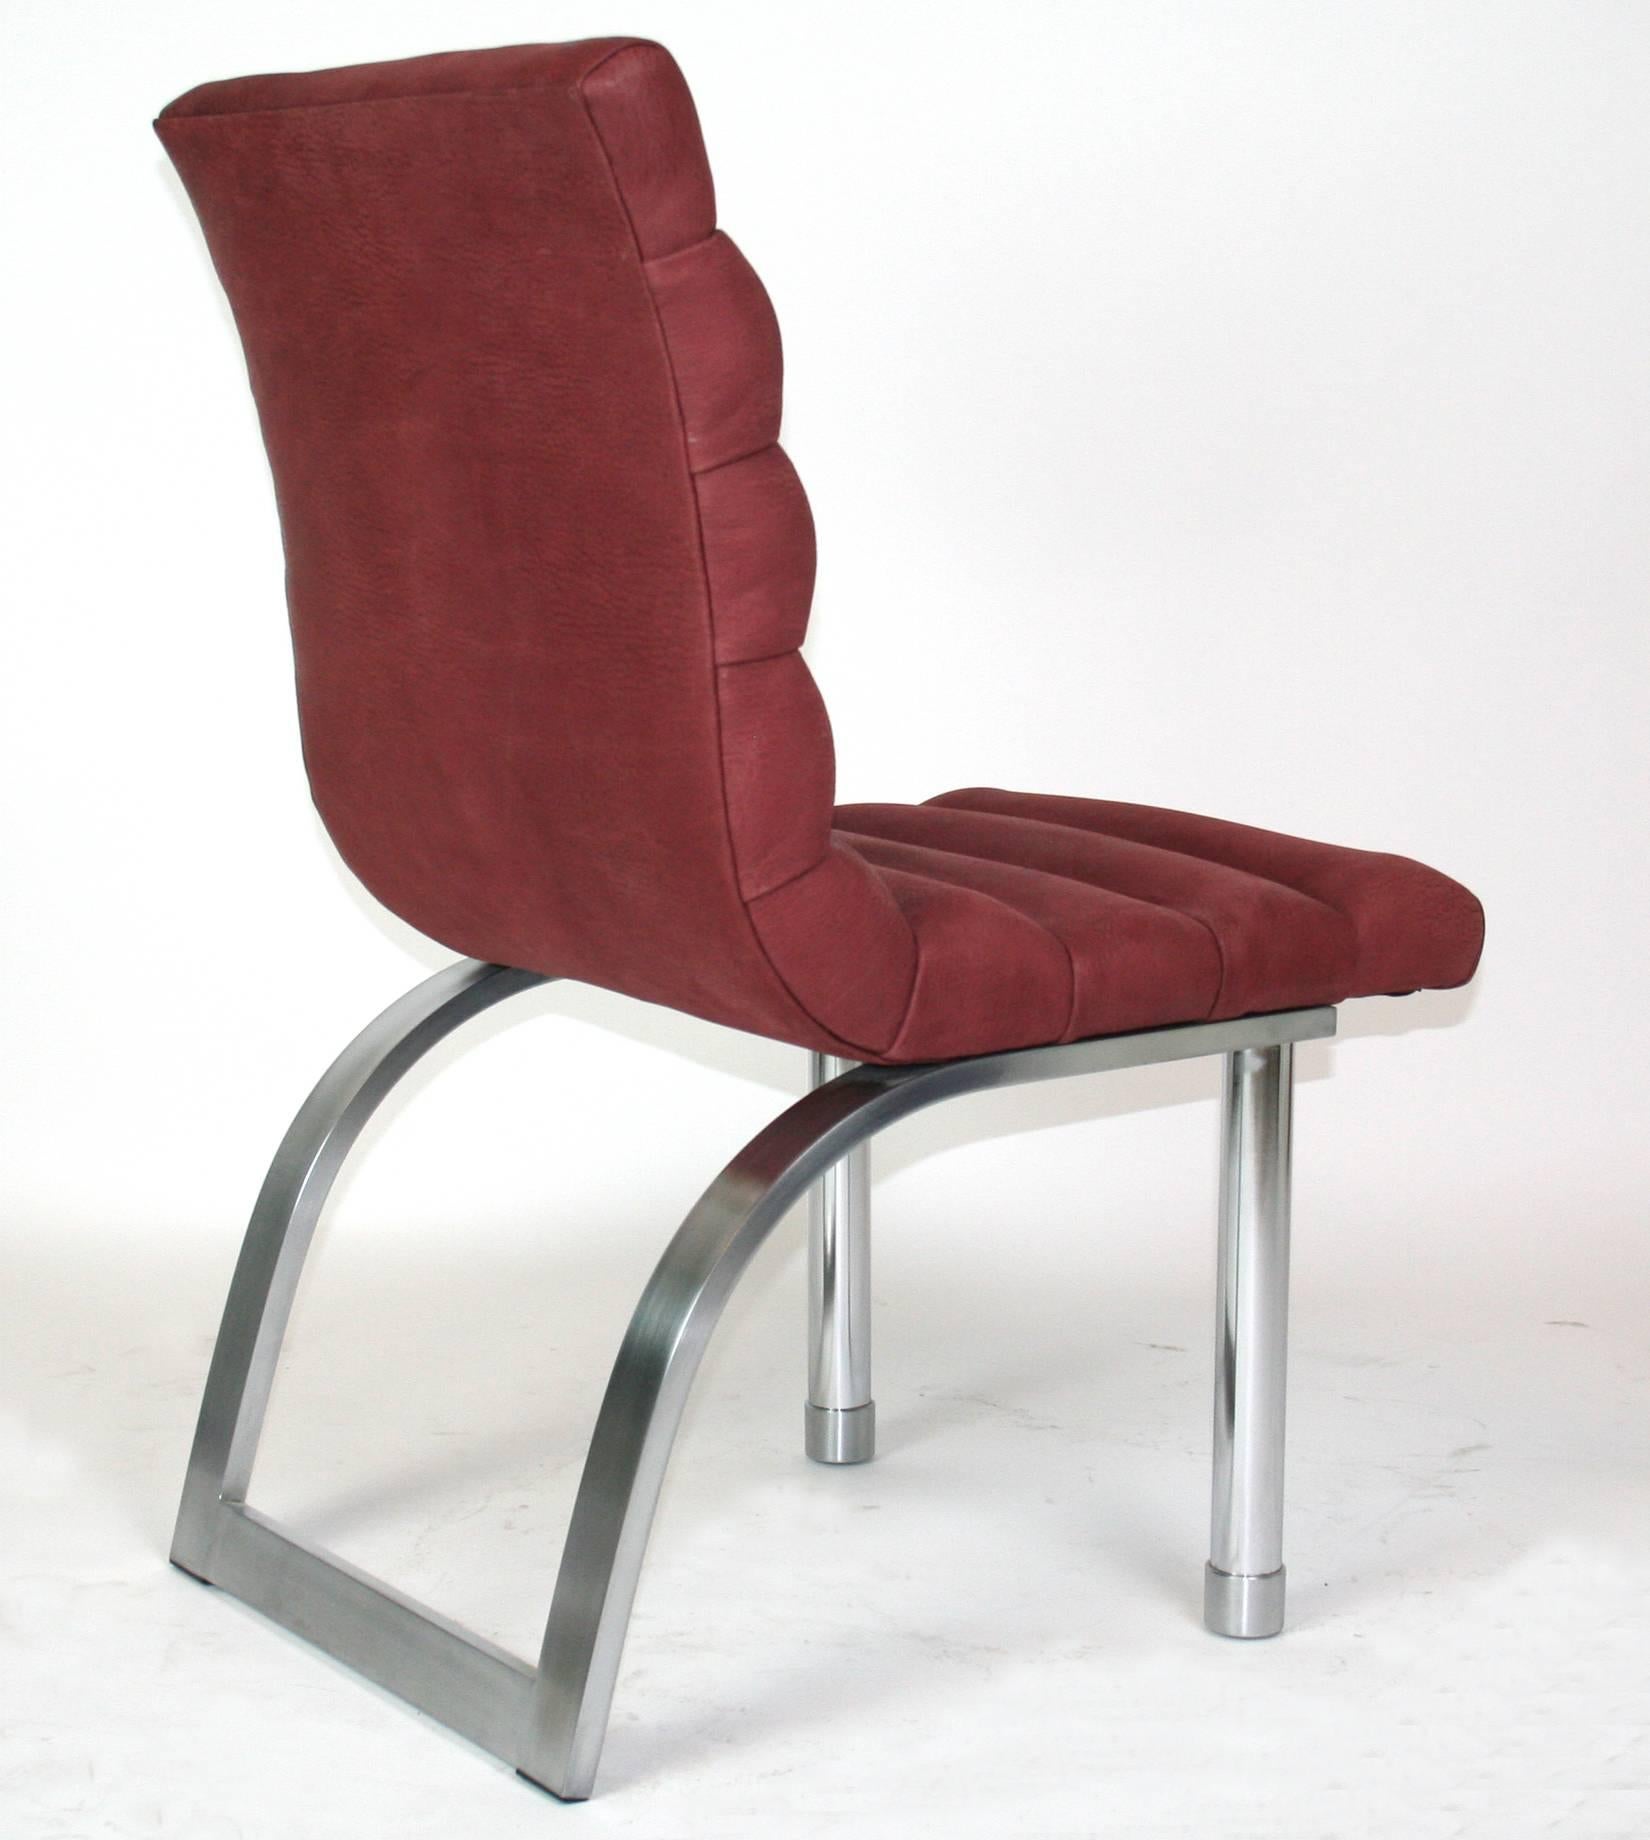 Ein getufteter Beistellstuhl von Jay Spectre für Century Furniture. Neu gepolstert mit pflaumenfarbenem Wildleder.